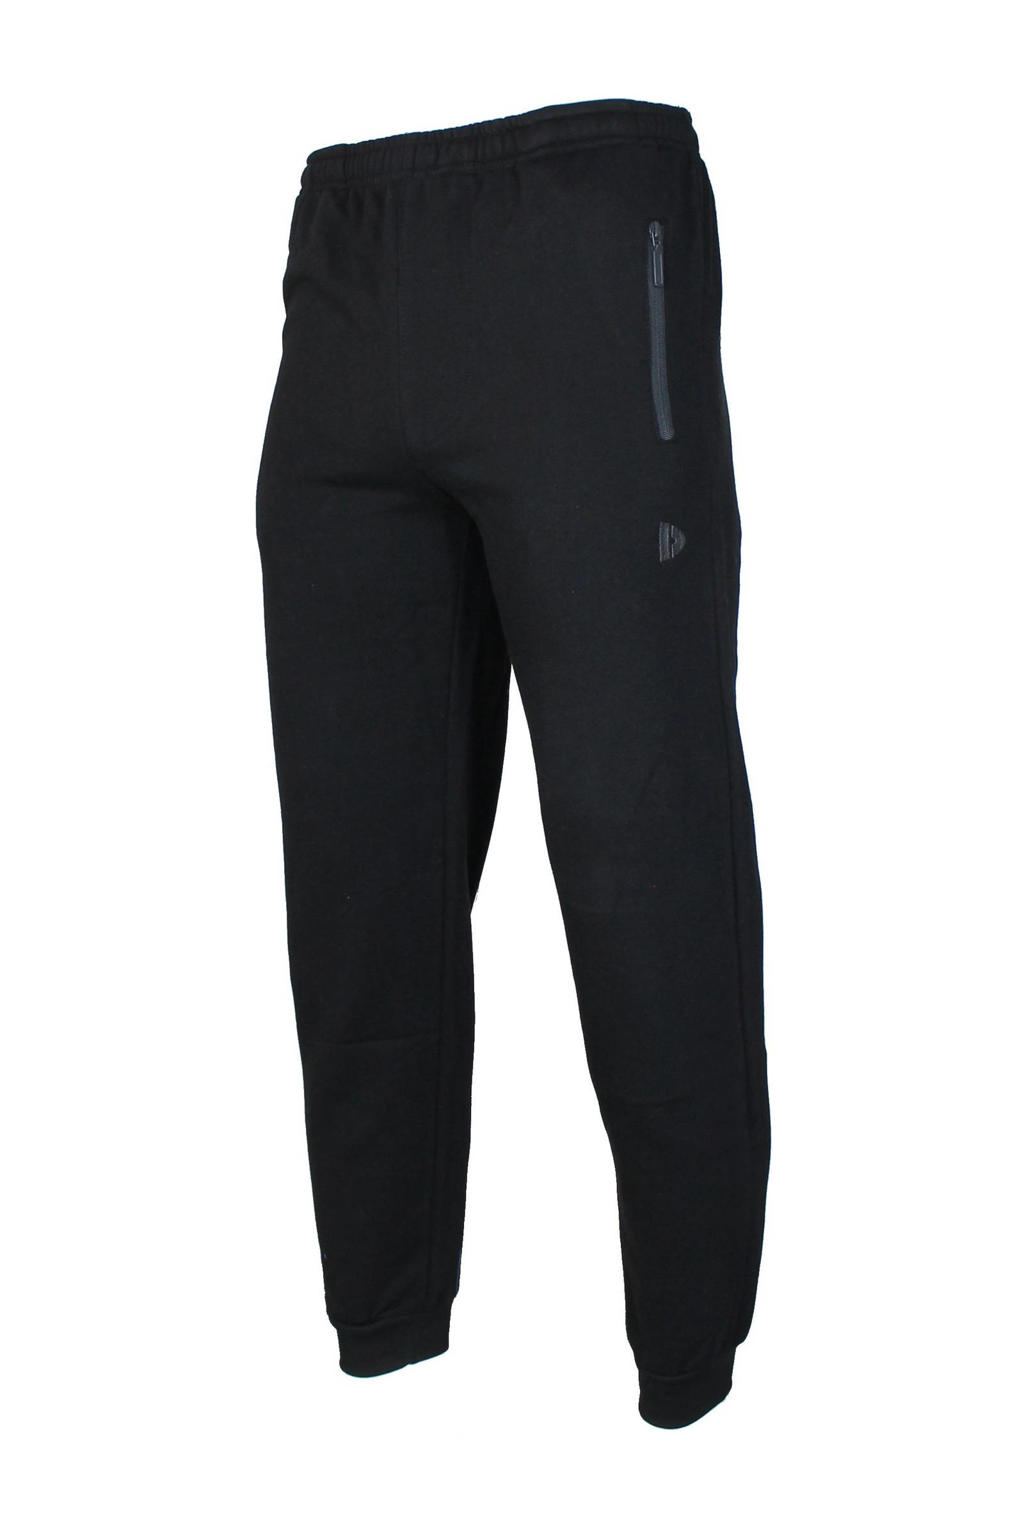 Zwarte jongens en meisjes Donnay trainingsbroek van polyester met regular fit, regular waist en elastische tailleband